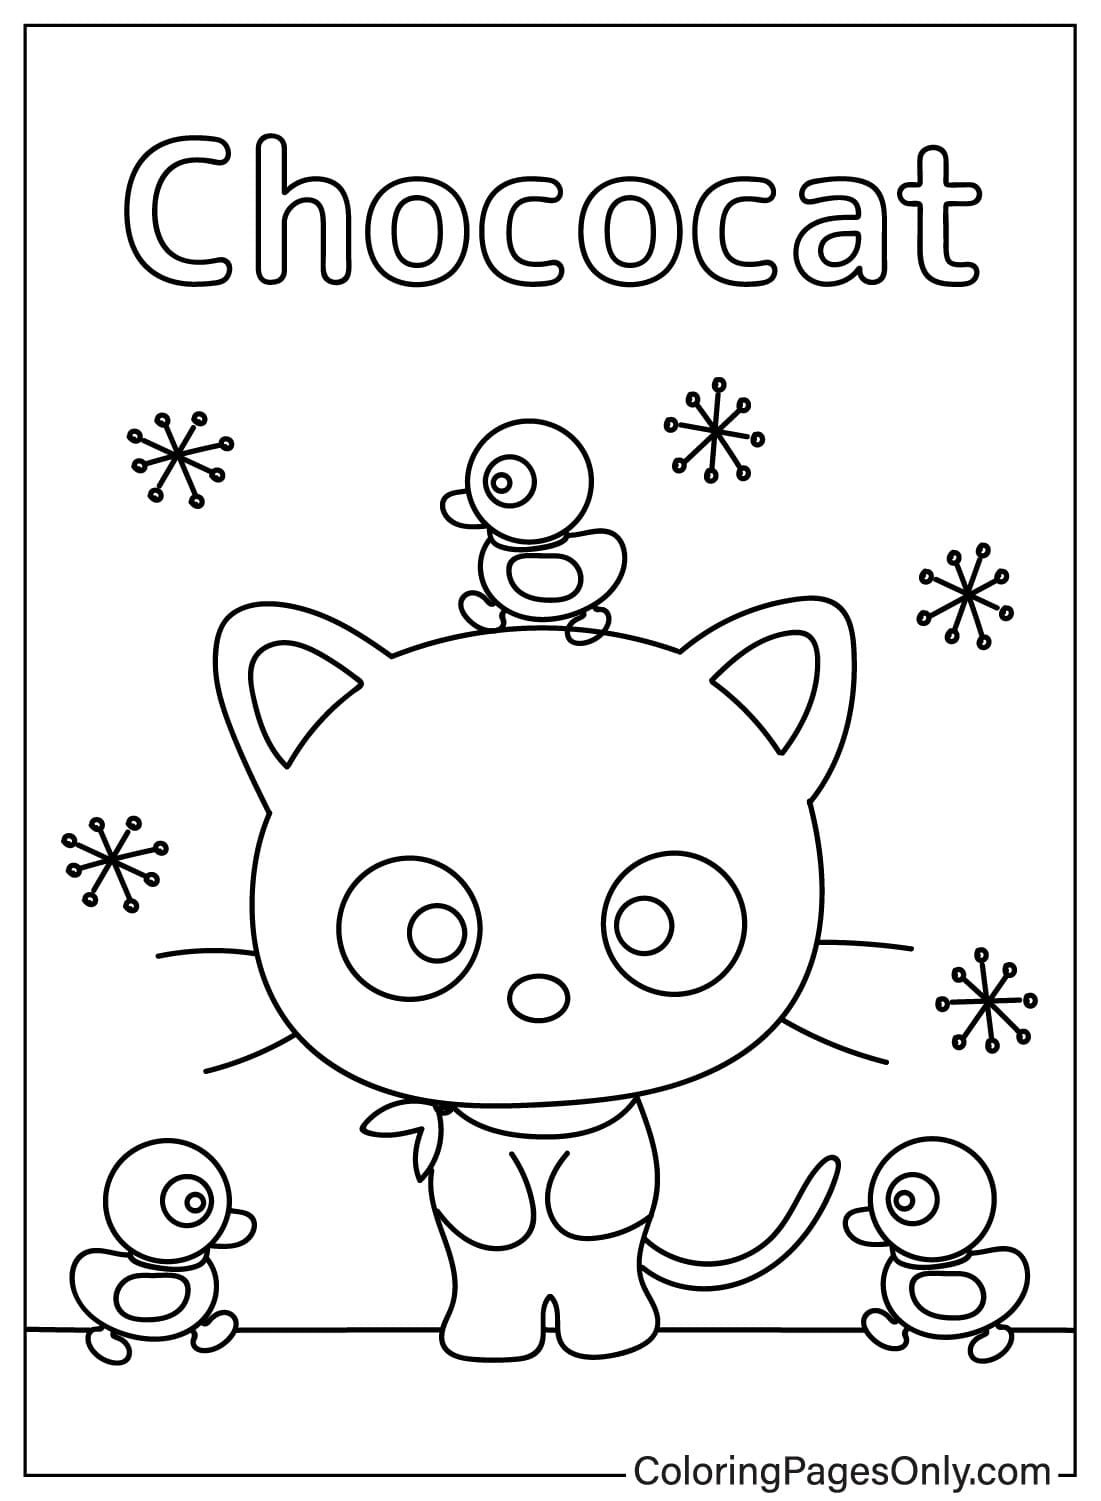 Chococat kleurplaat van Chococat